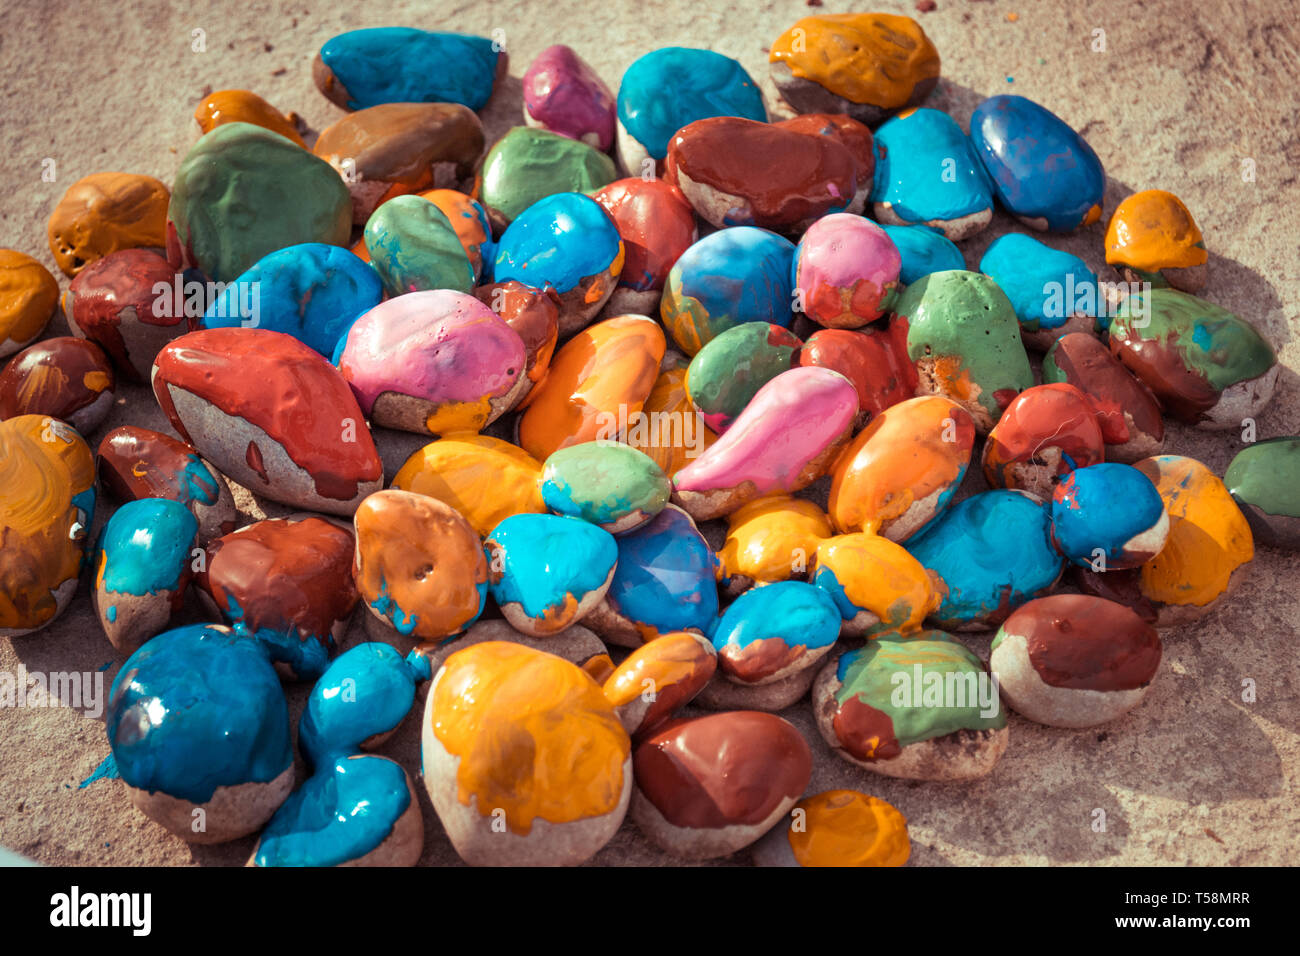 Les pierres de couleur des peintures colorées de différentes couleurs se situent sur une surface plate. Close-up Banque D'Images